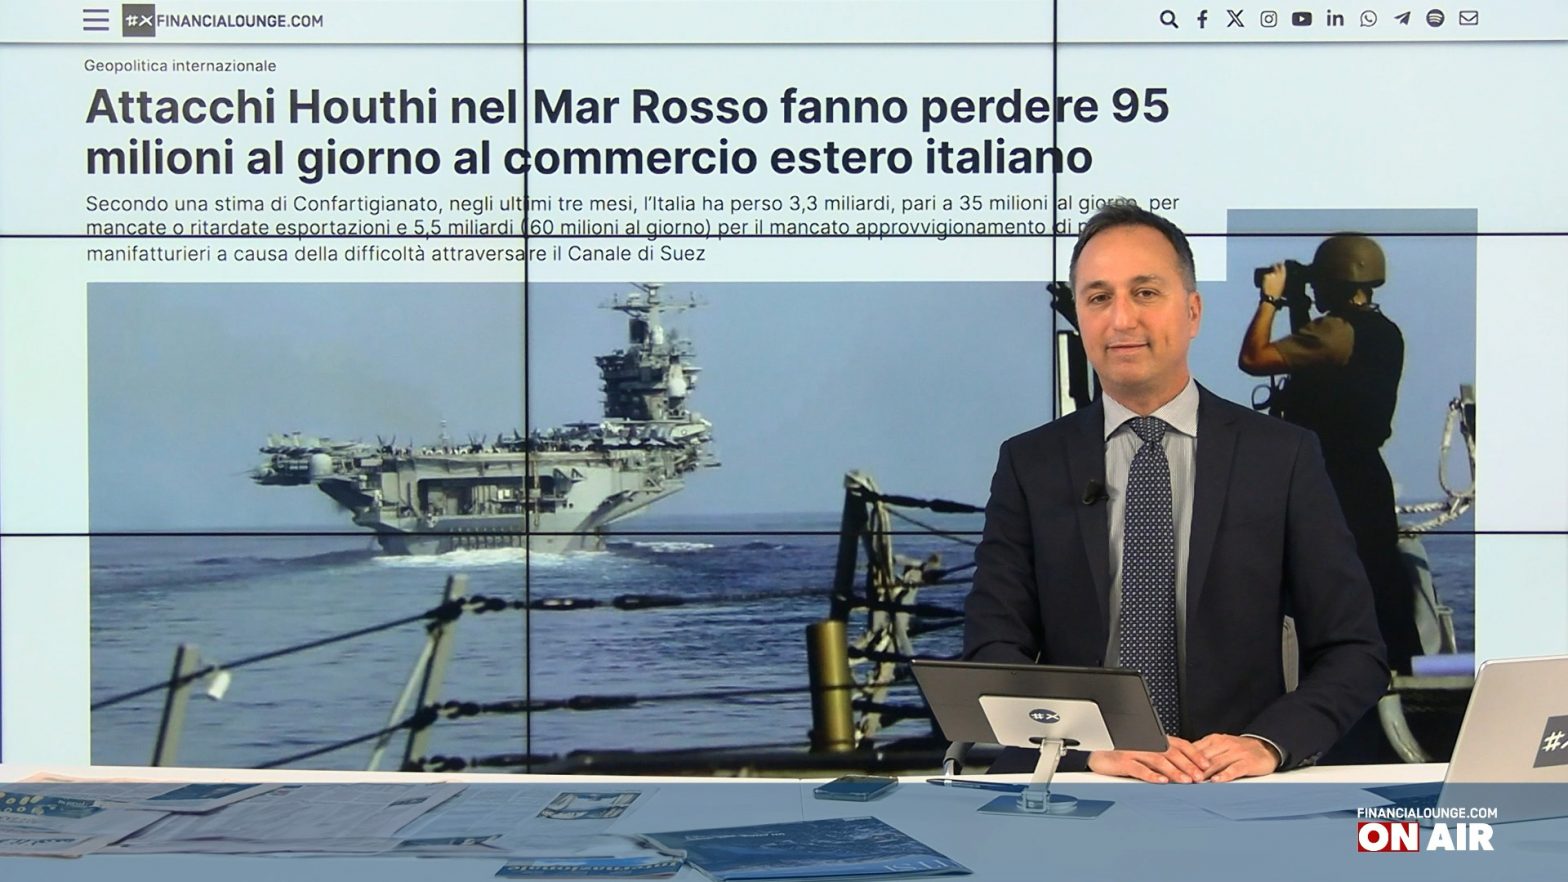 financialounge.com Le tensioni in Mar Rosso costano all'Italia 95 mln al giorno - Edizione del 26 gennaio